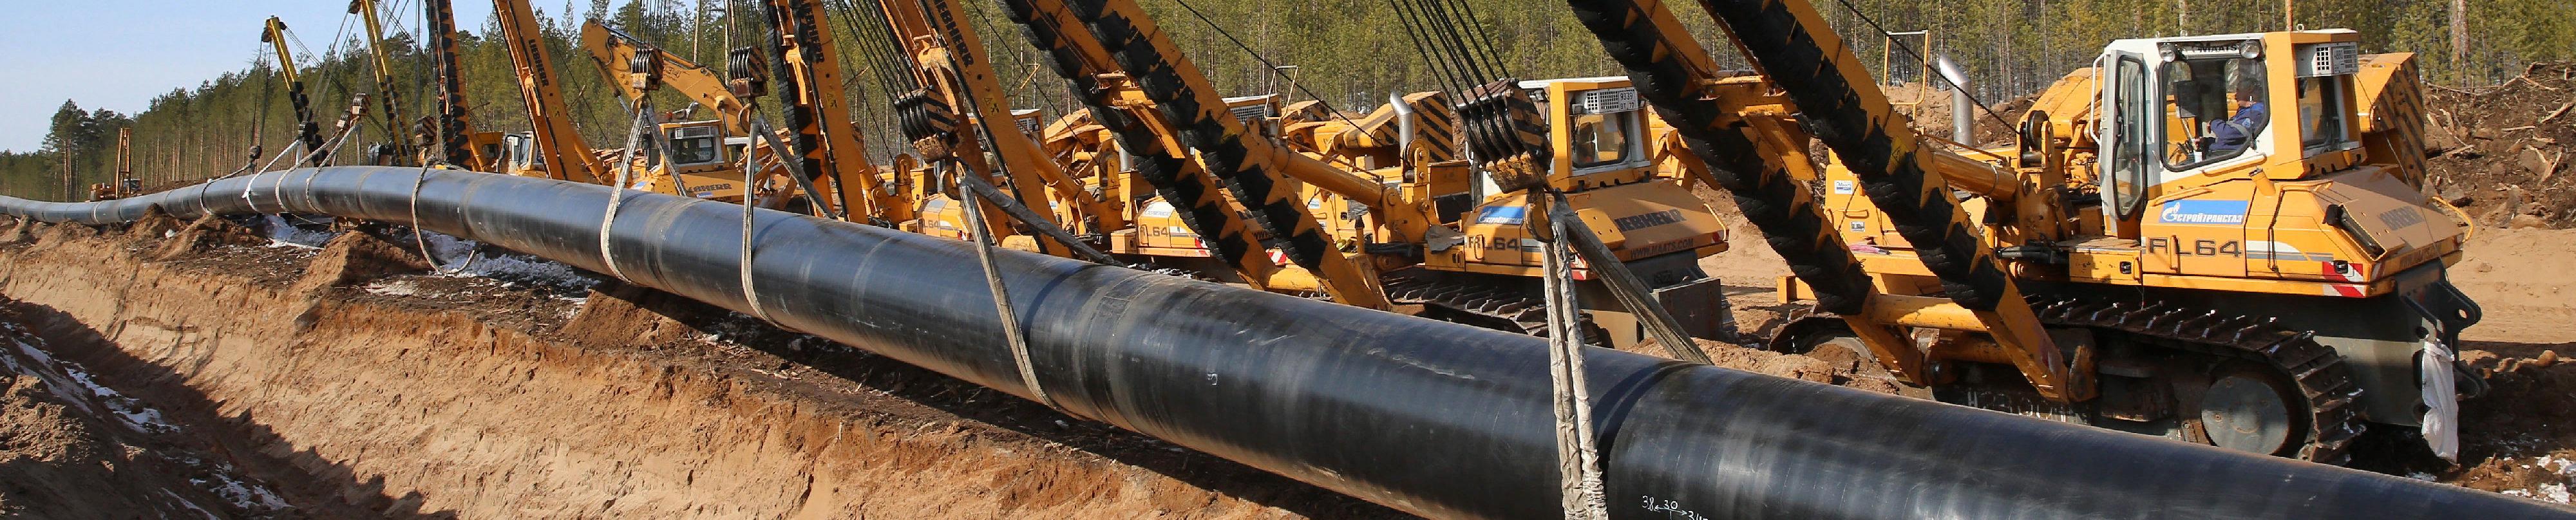 Компания Экзеплэнт продолжает активное участие в строительстве газопровода «Сила Сибири» и других стройках федерального масштаба